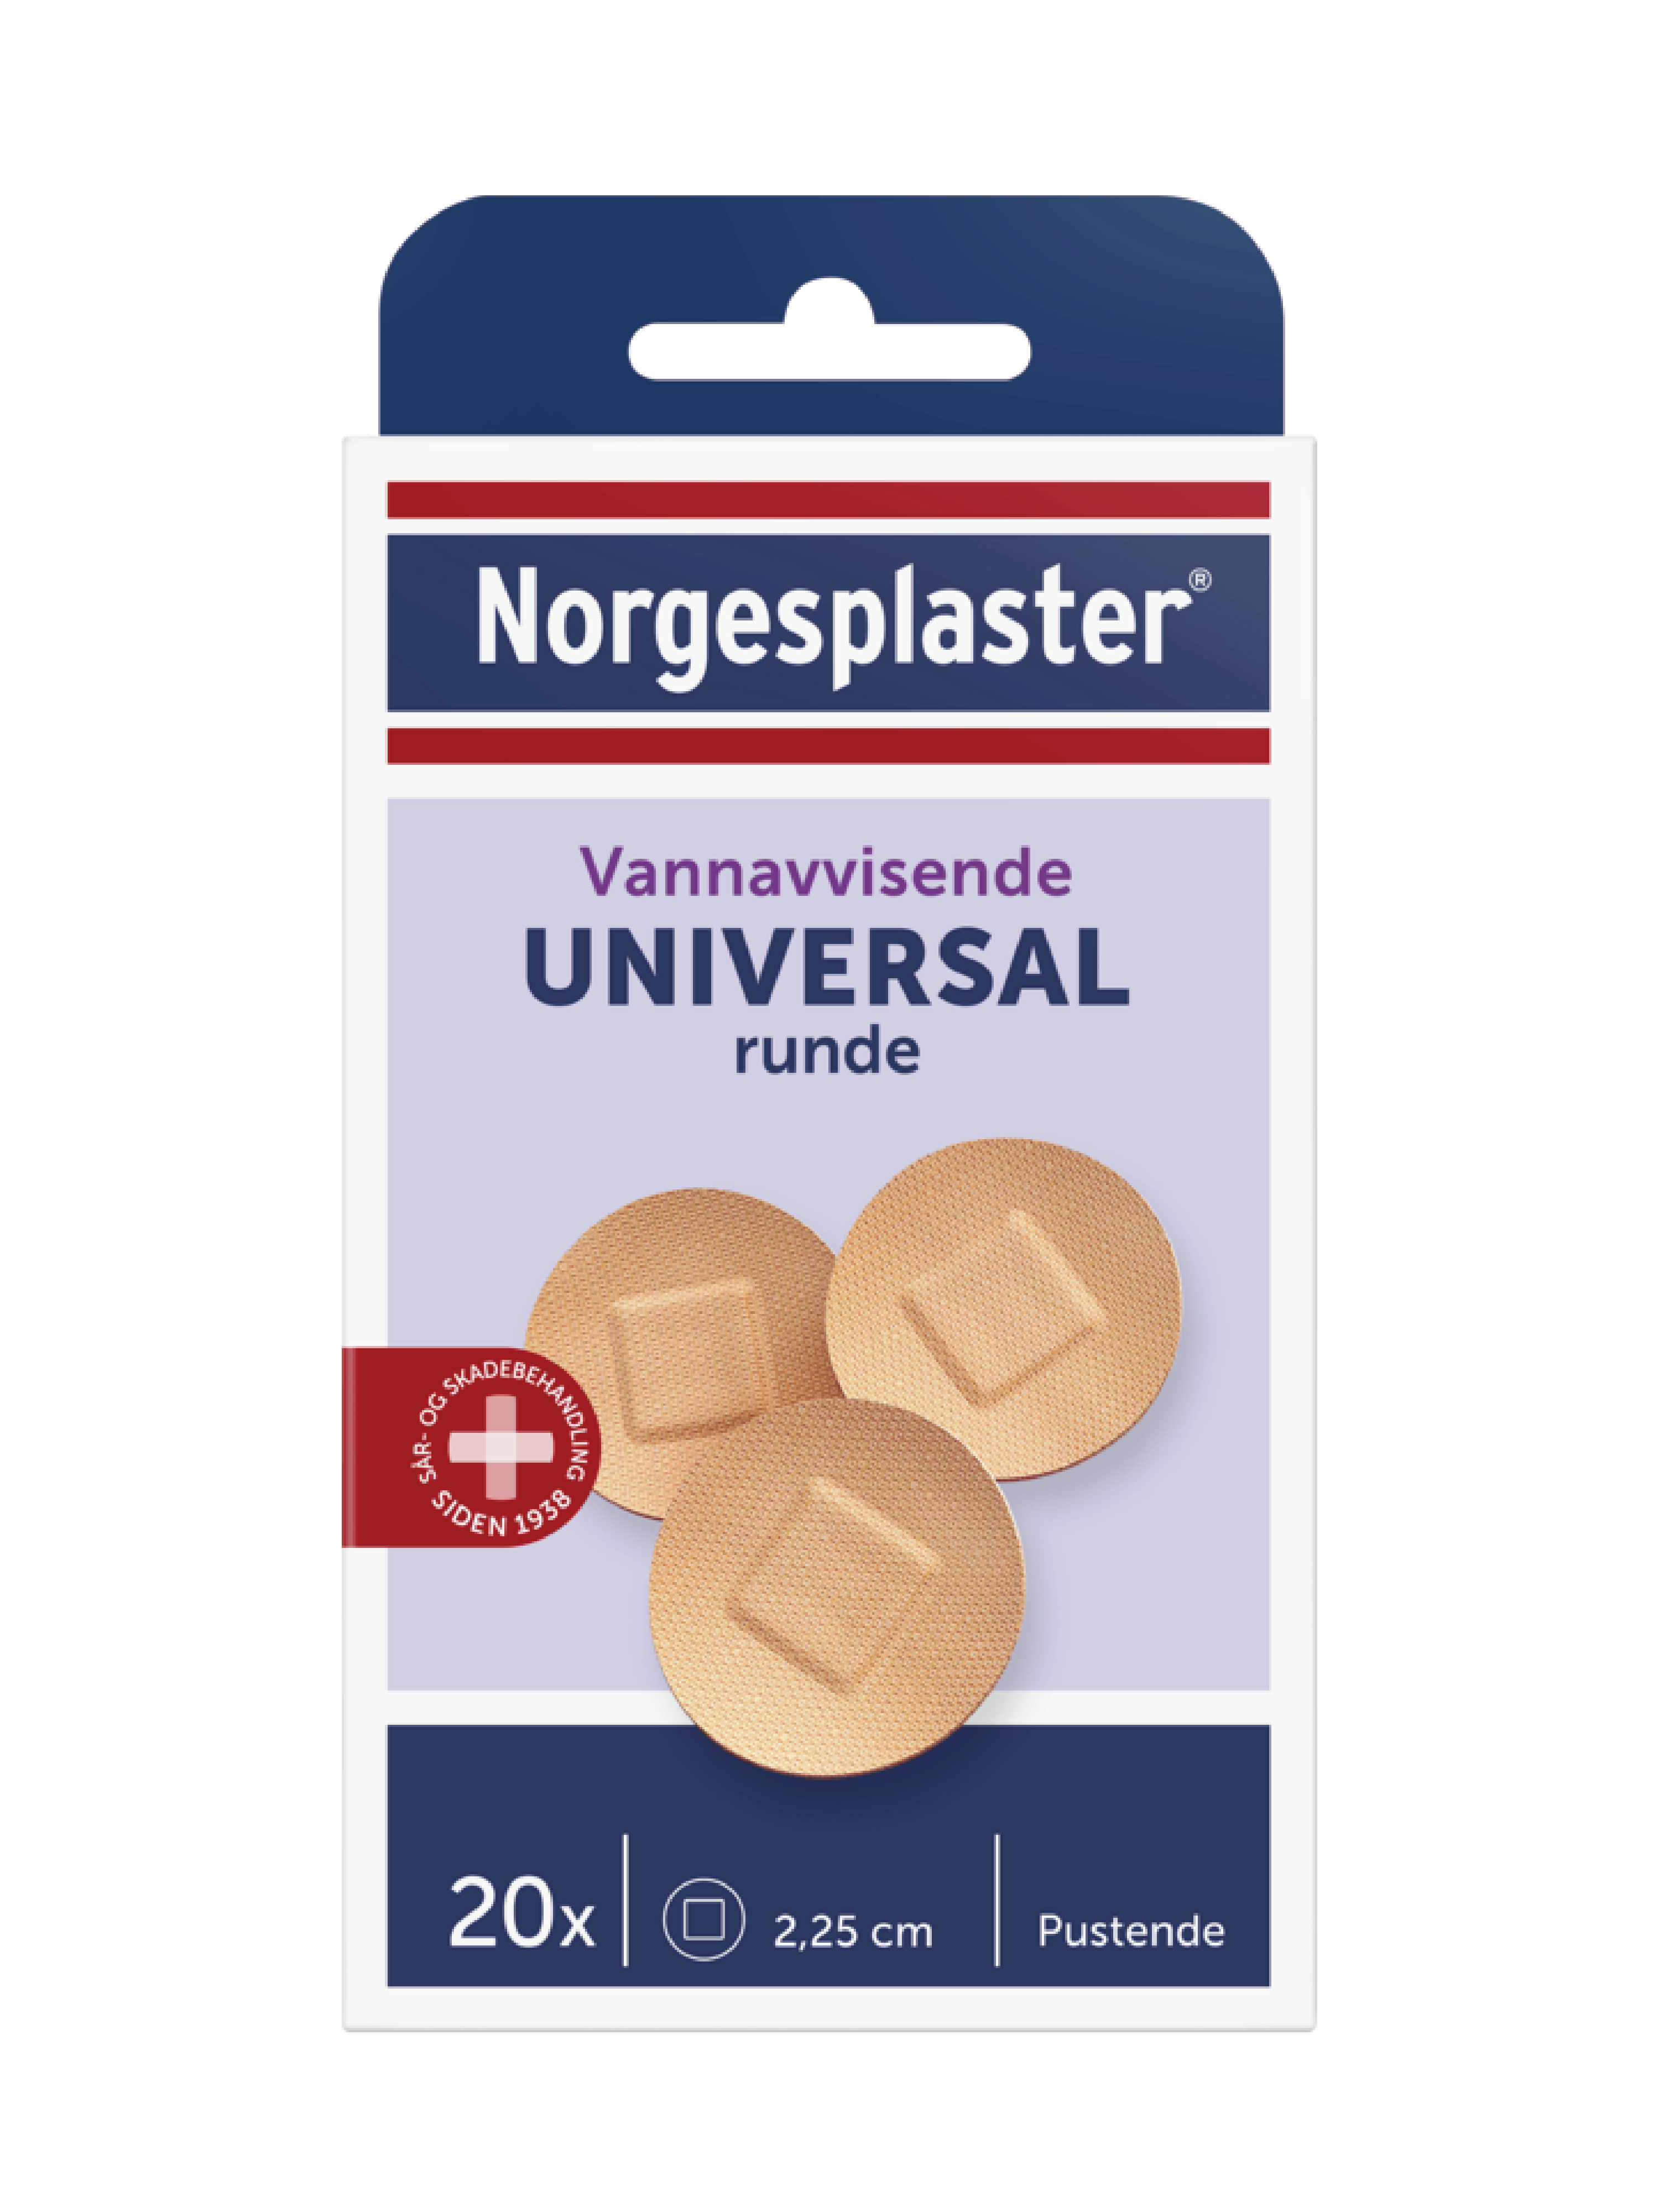 Norgesplaster Universal runde, 20 stk.